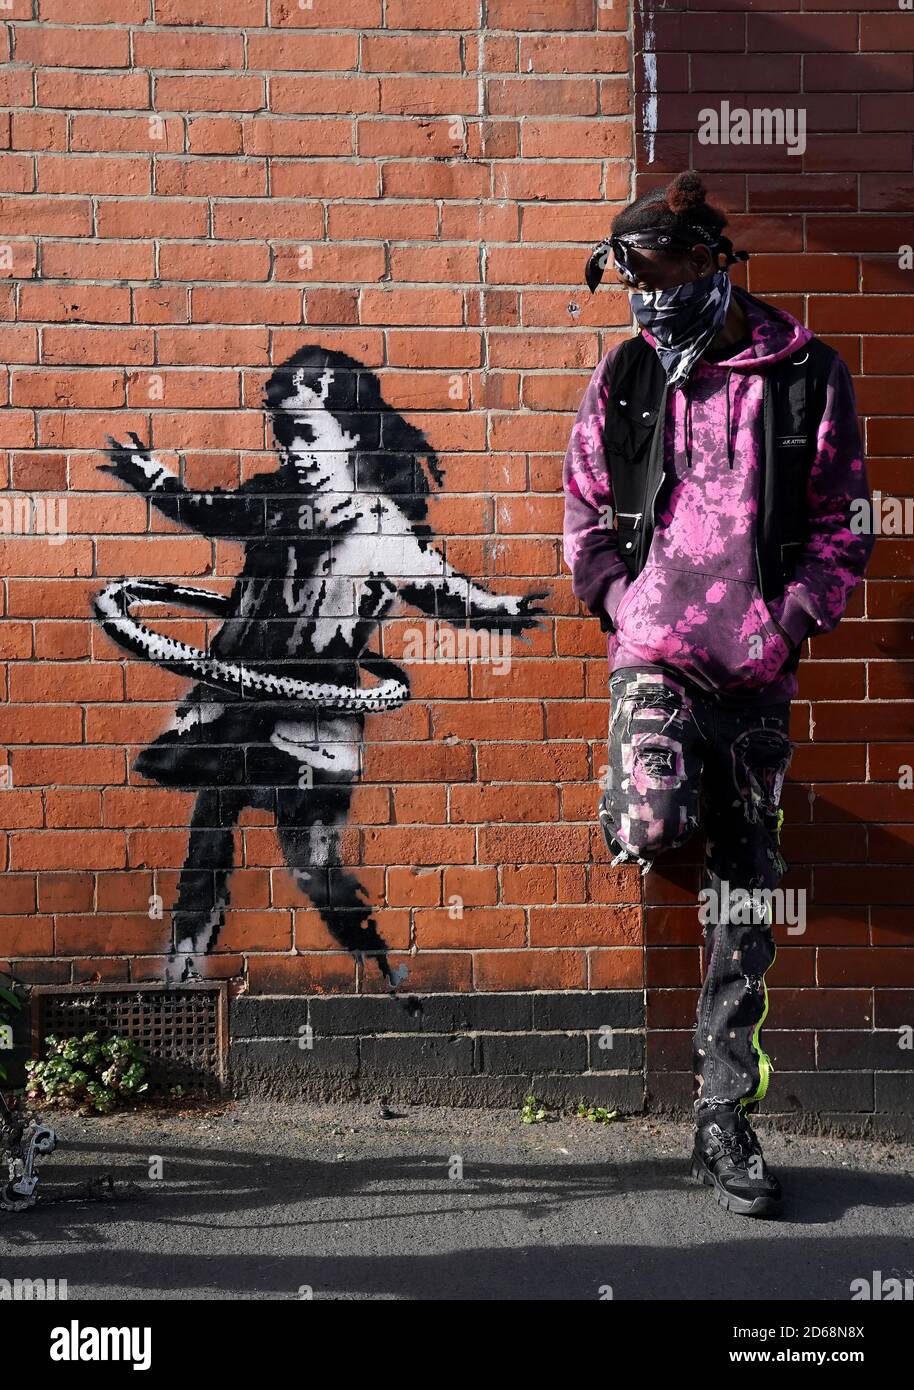 Der Nottingham-Bewohner Phidizz posiert für ein Foto neben Graffiti-Kunstwerken, die jetzt als das Werk des Straßenkünstlers Banksy bestätigt werden, auf einer Seite eines Grundstücks an der Rothesay Avenue und der Ilkeston Road, Nottingham. Das Kunstwerk zeigt ein junges Mädchen, das mit einem Reifen spielt, und ist auf einer Wand in der Nähe eines verlassenen Fahrrads gemalt, dem ein Rad fehlt. Stockfoto